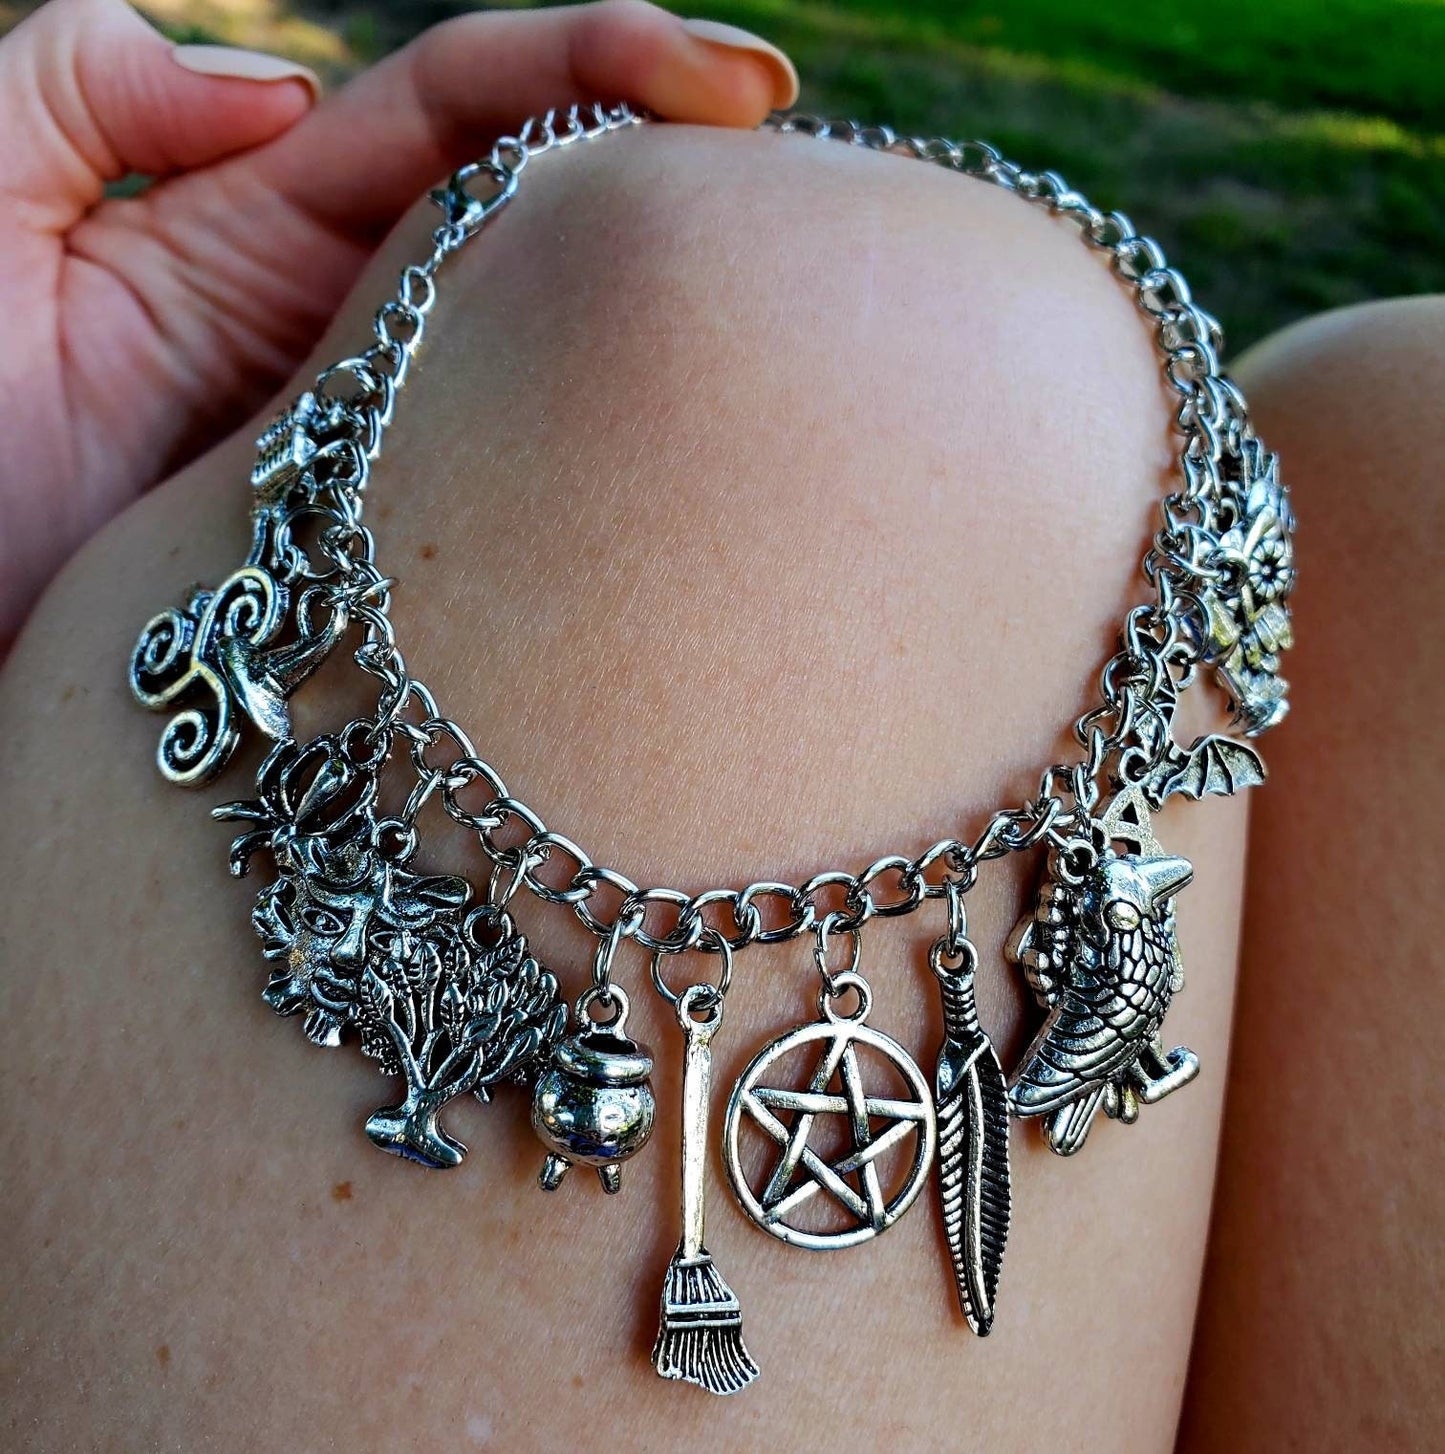 Witch Charm Bracelet